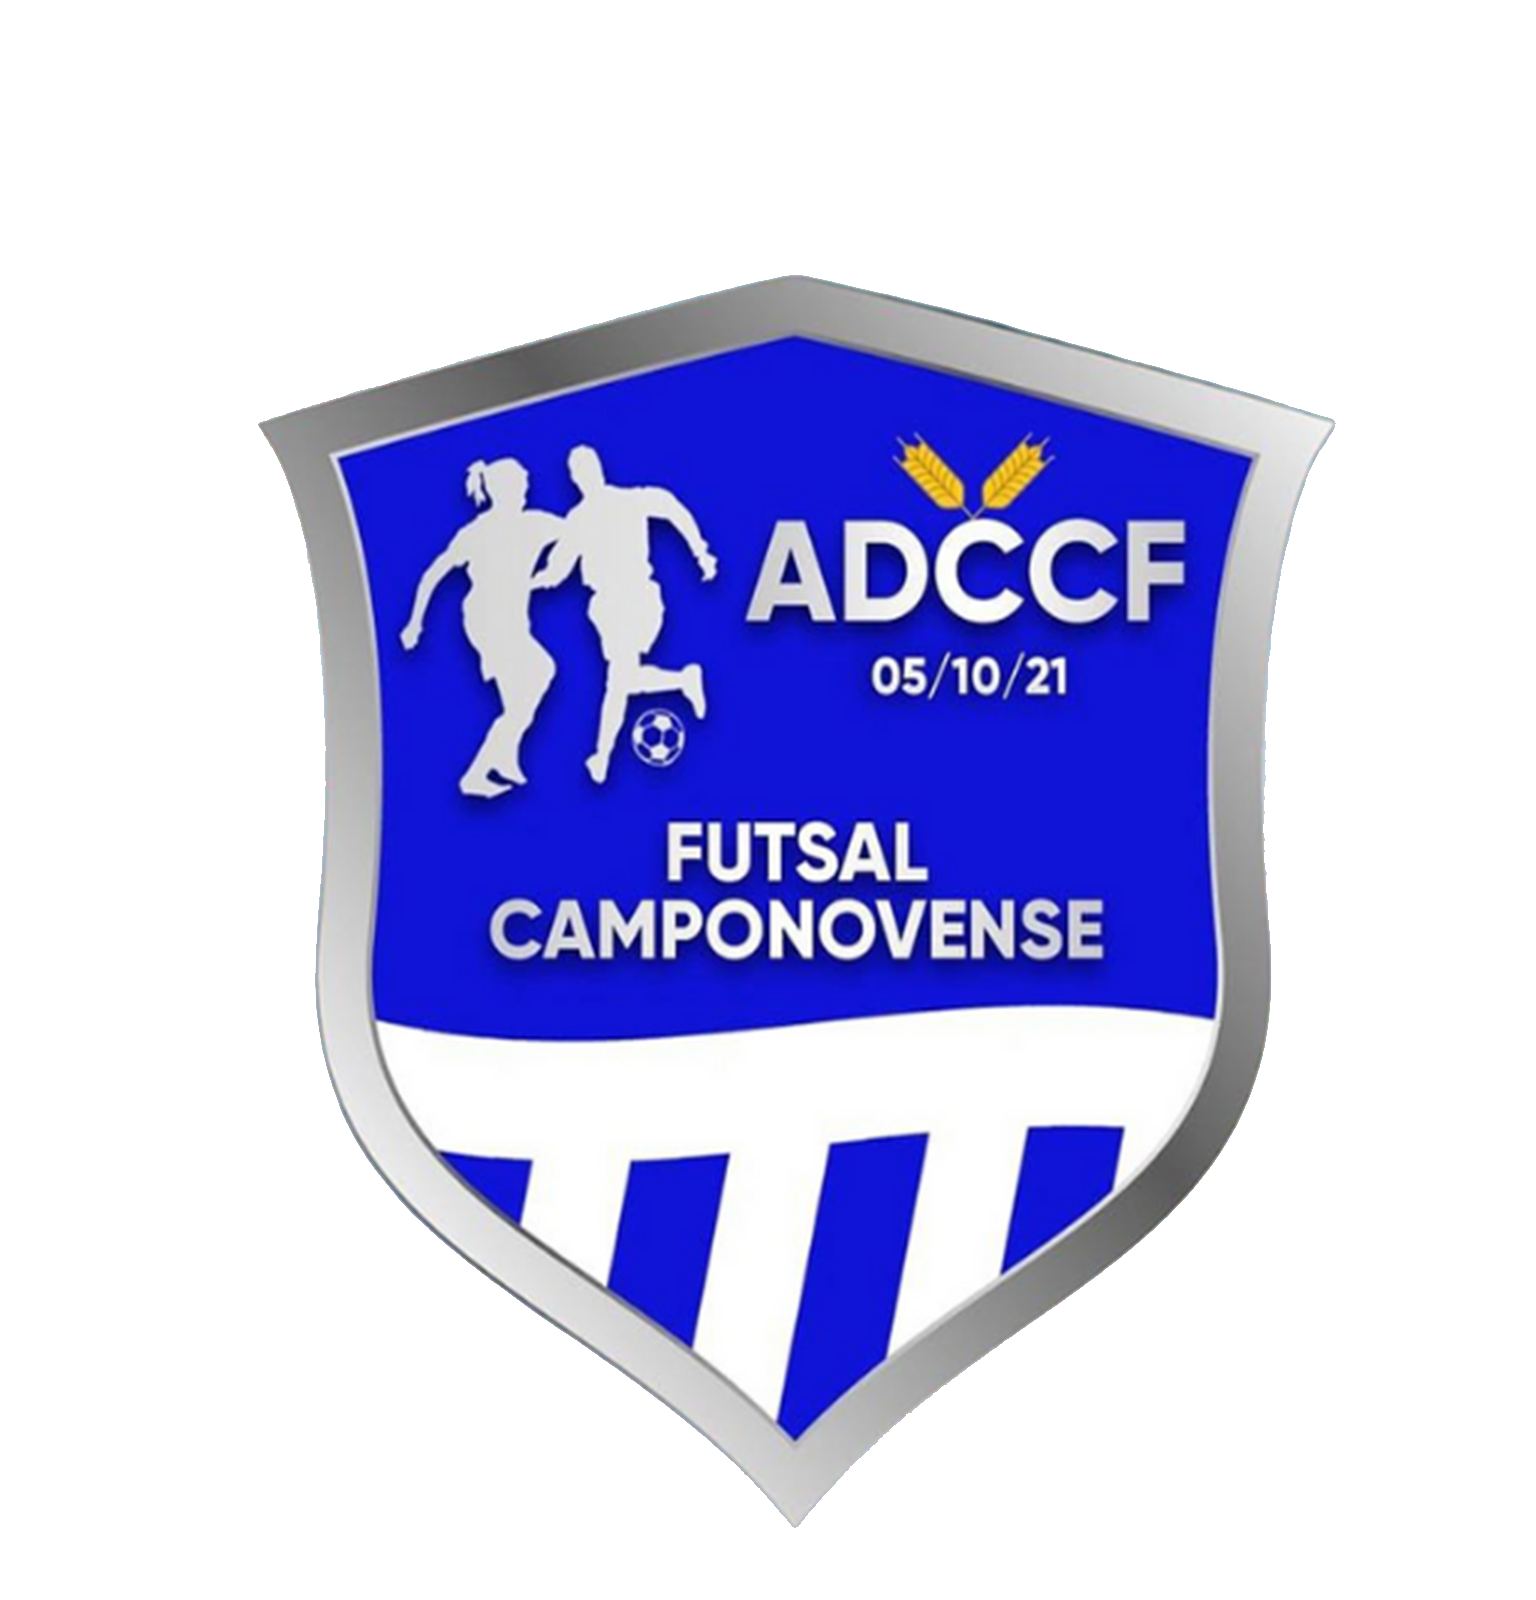 Futsal campovonense